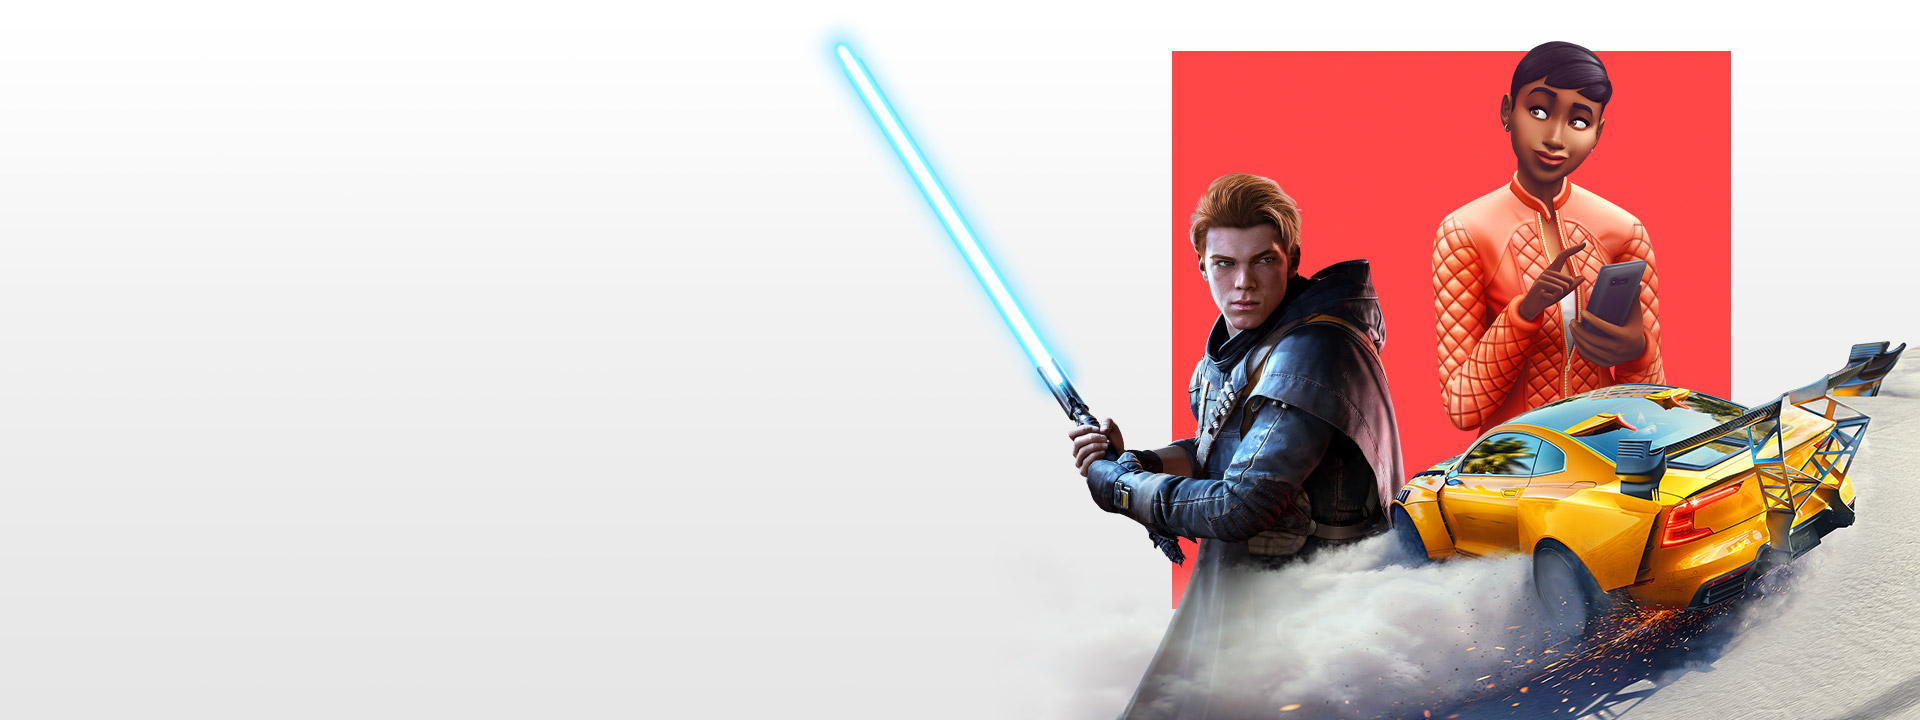 Добірка персонажів із різних ігор EA, зокрема Star Wars Jedi: Fallen Order, The Sims 4 і Need for Speed Heat.